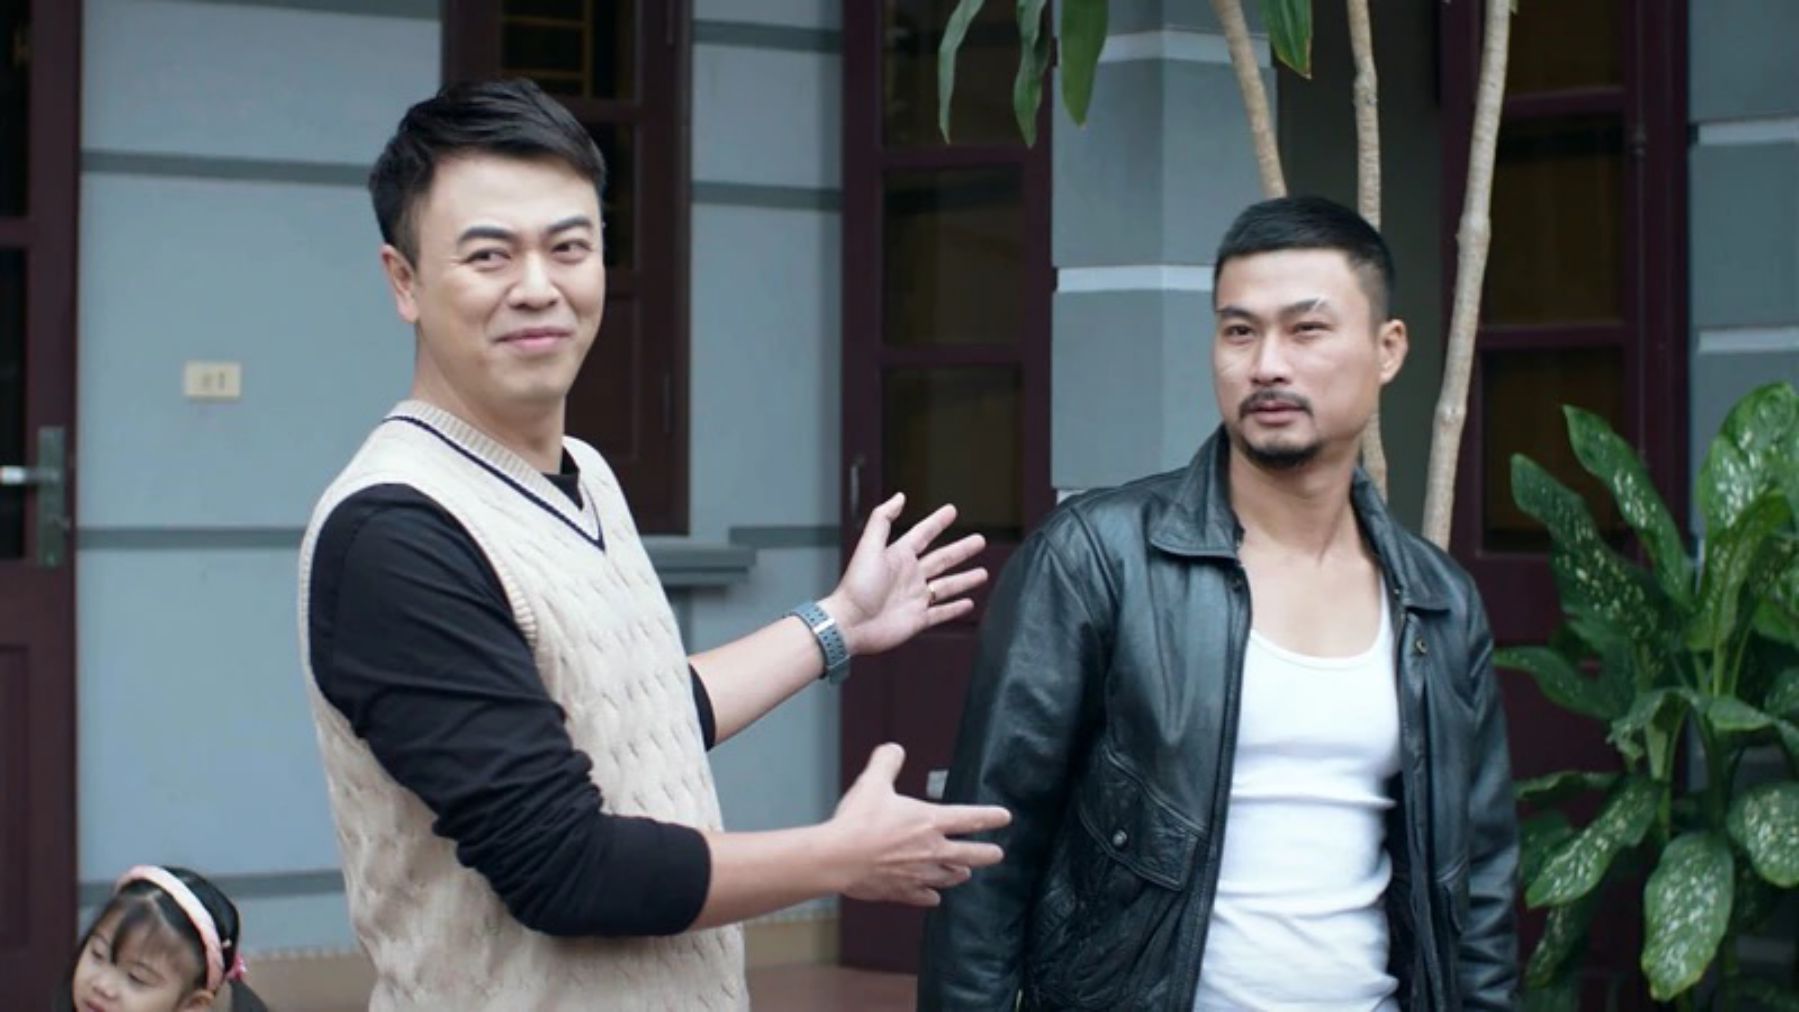 Tuấn Tú và Duy Hưng trong phim “Người một nhà“. Ảnh: Nhà sản xuất